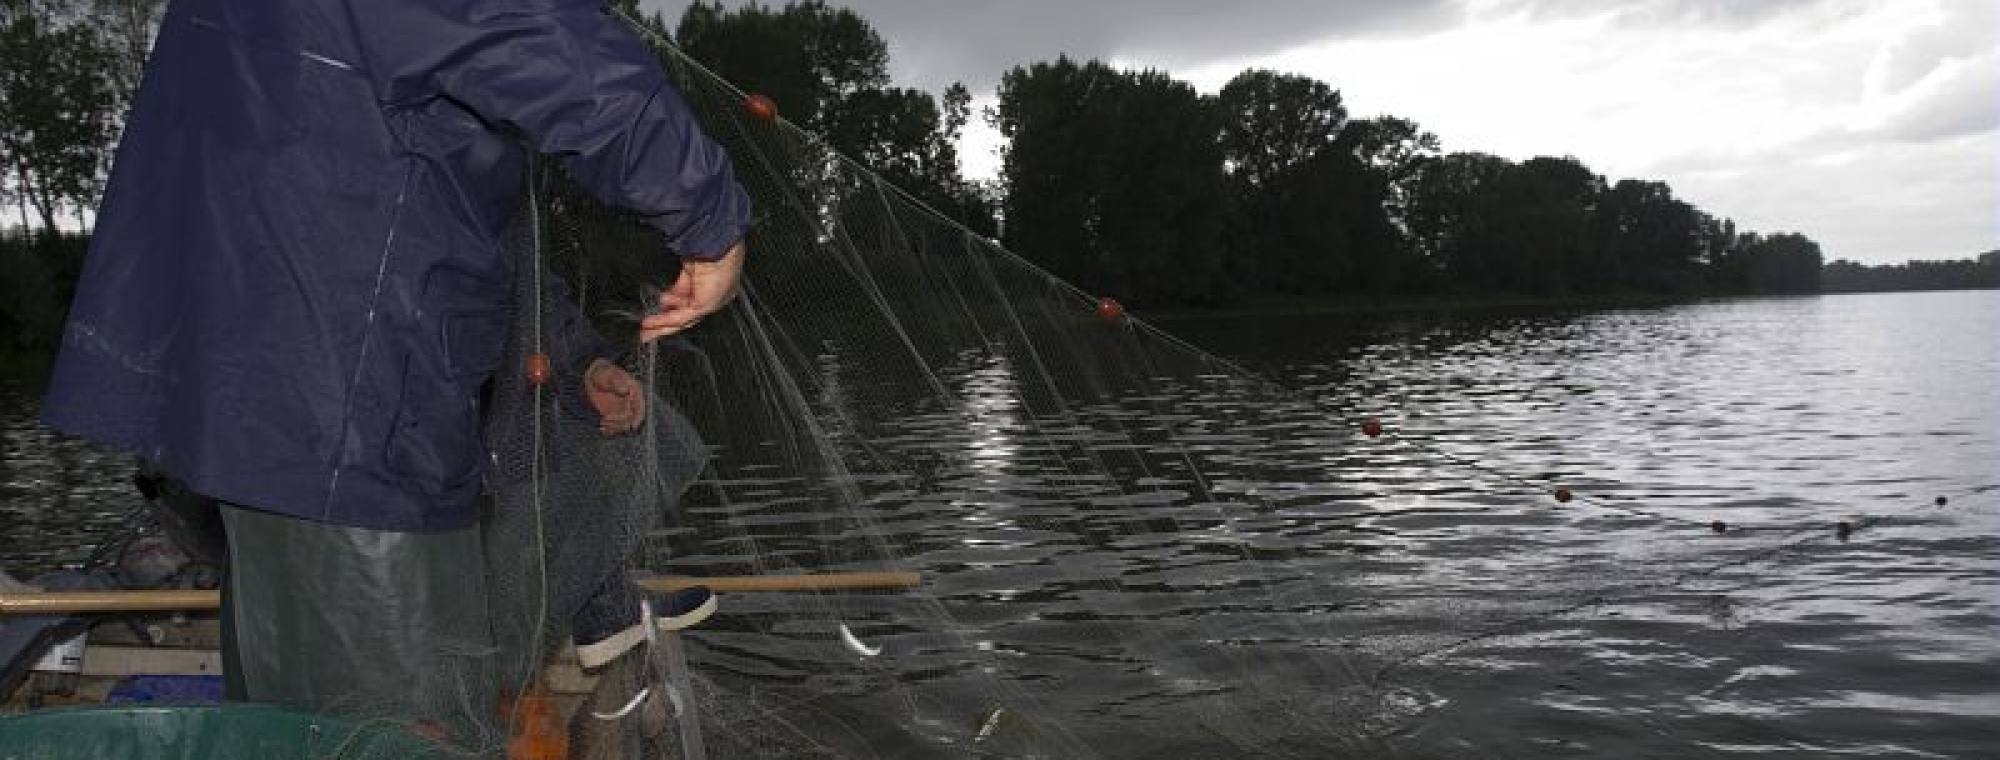 Suivi des alosons dans la Garonne en Lot-et-Garonne, LIFE alose, pêche du 18 Juillet 2011 : pêche de jour au filet araignée